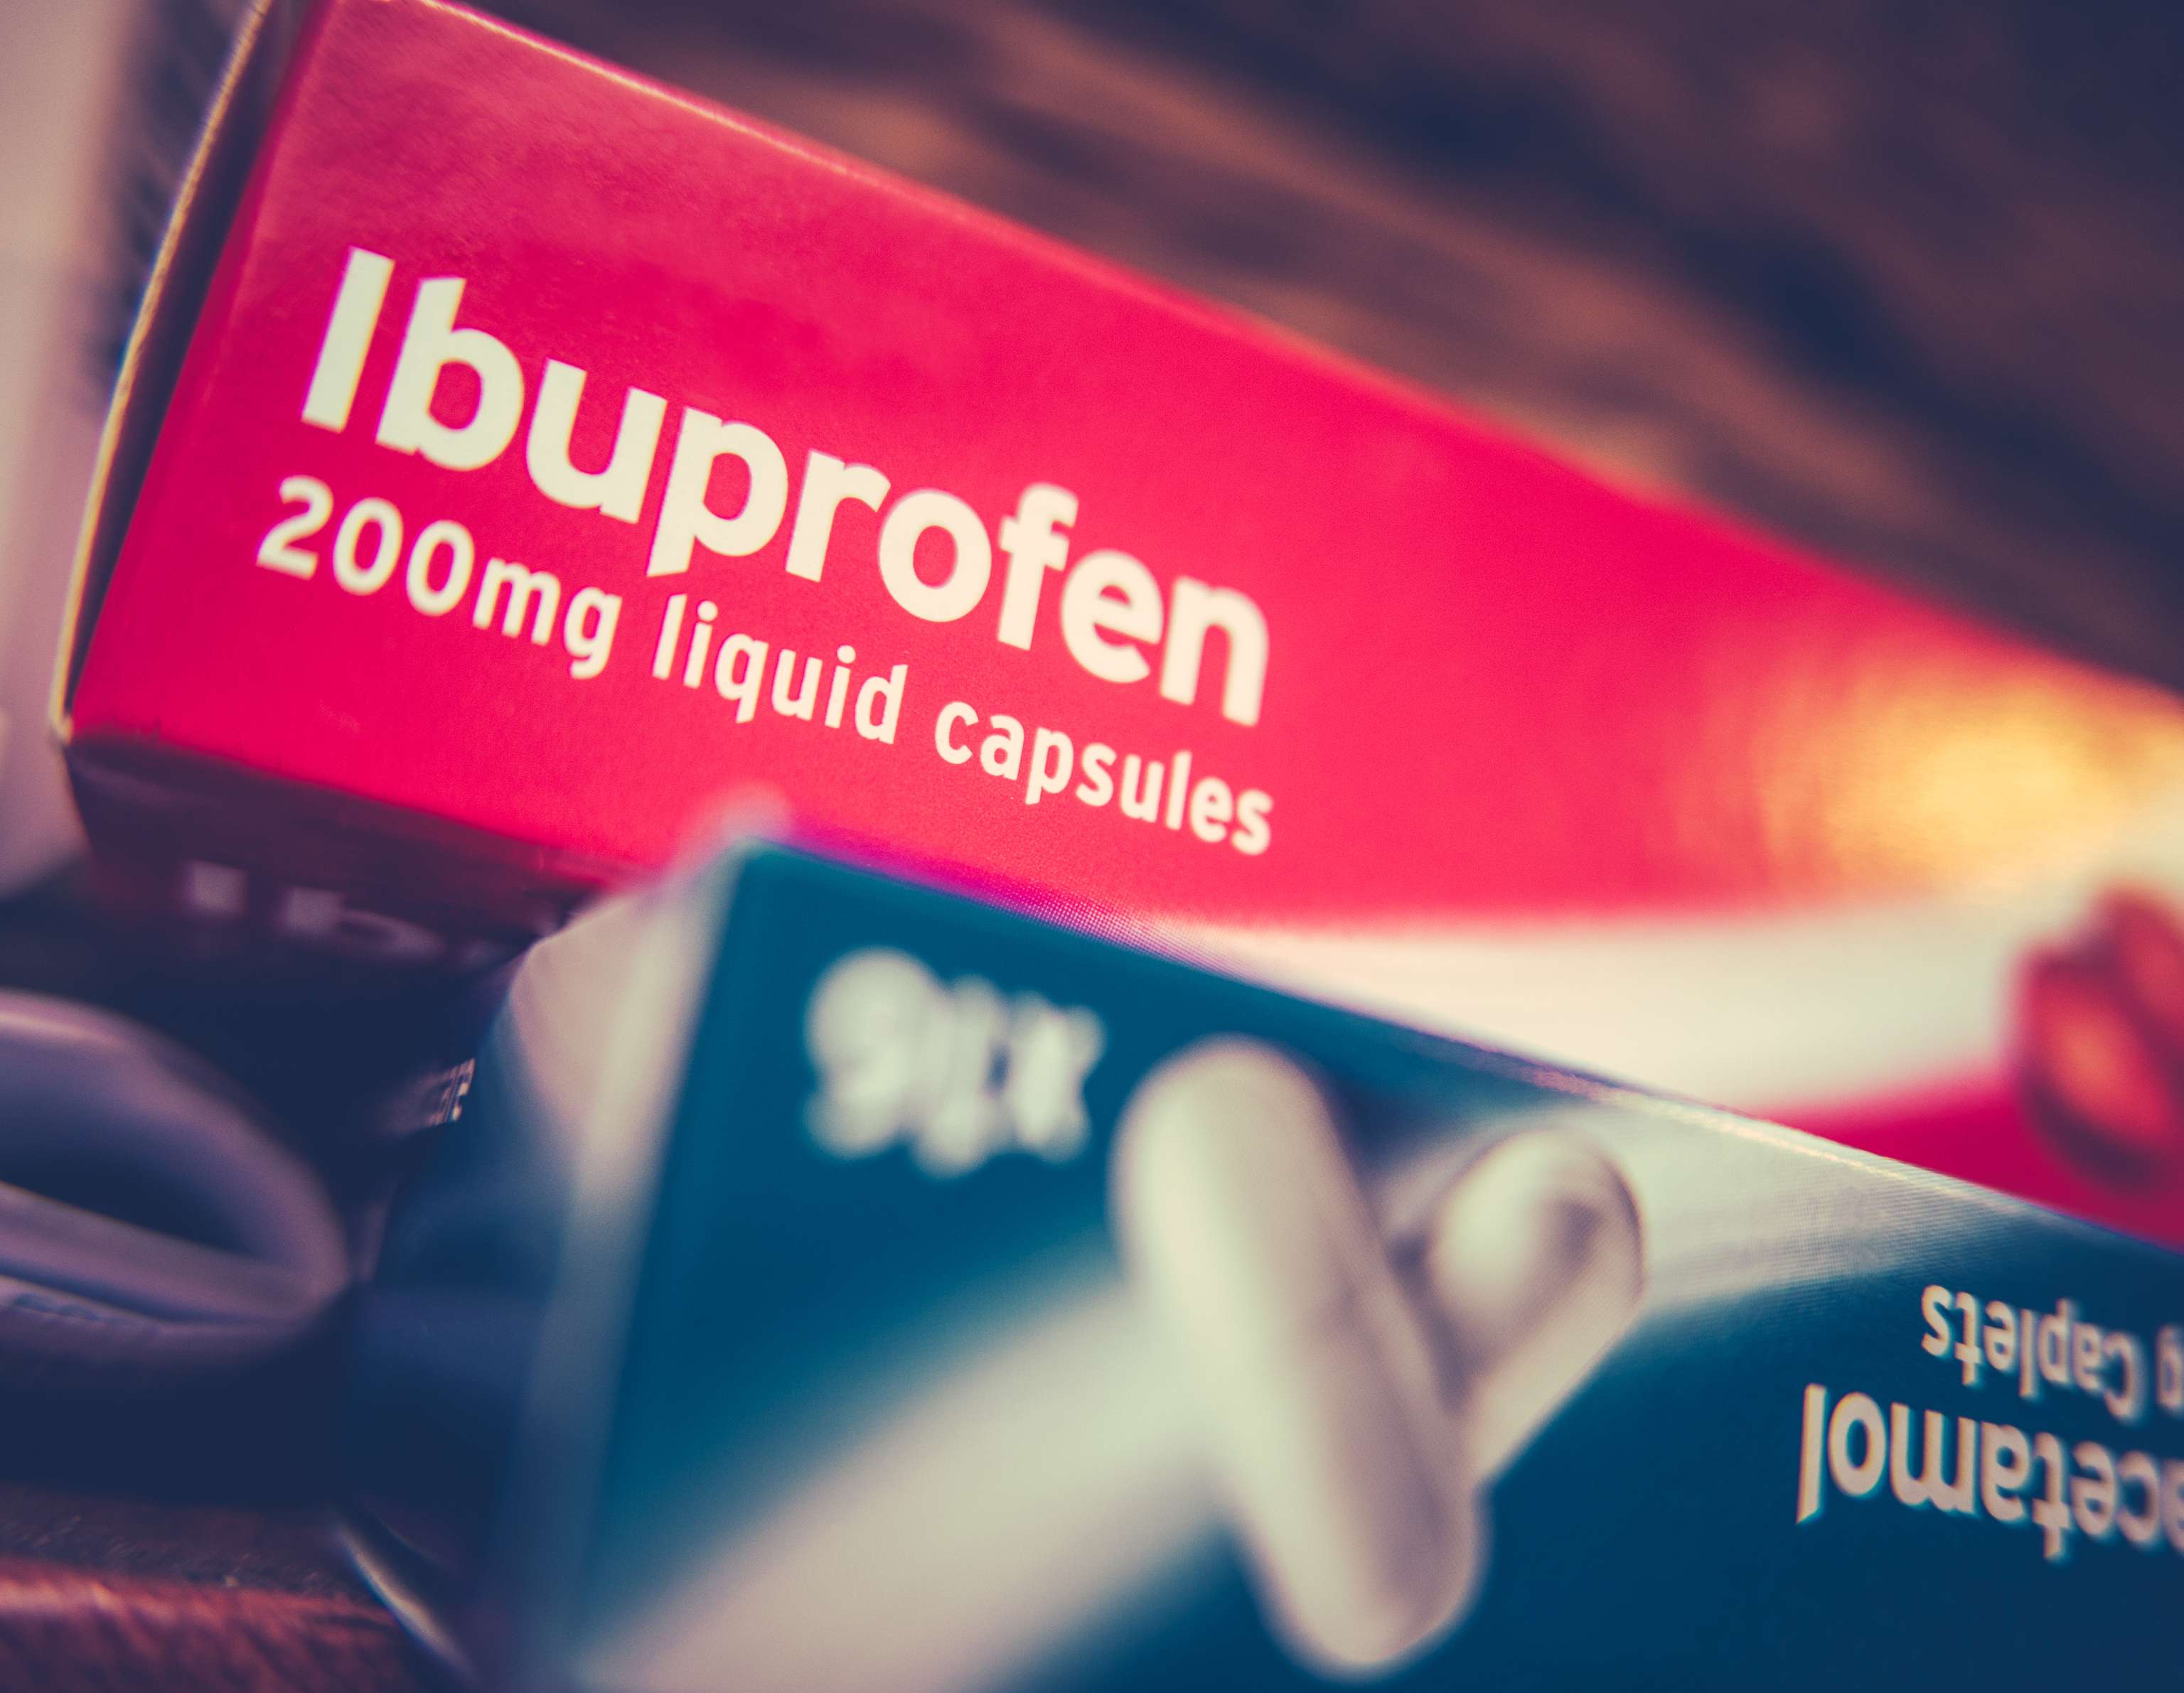 Vergleich von Ibuprofen und Paracetamol bei Kindern unter 2 Jahren